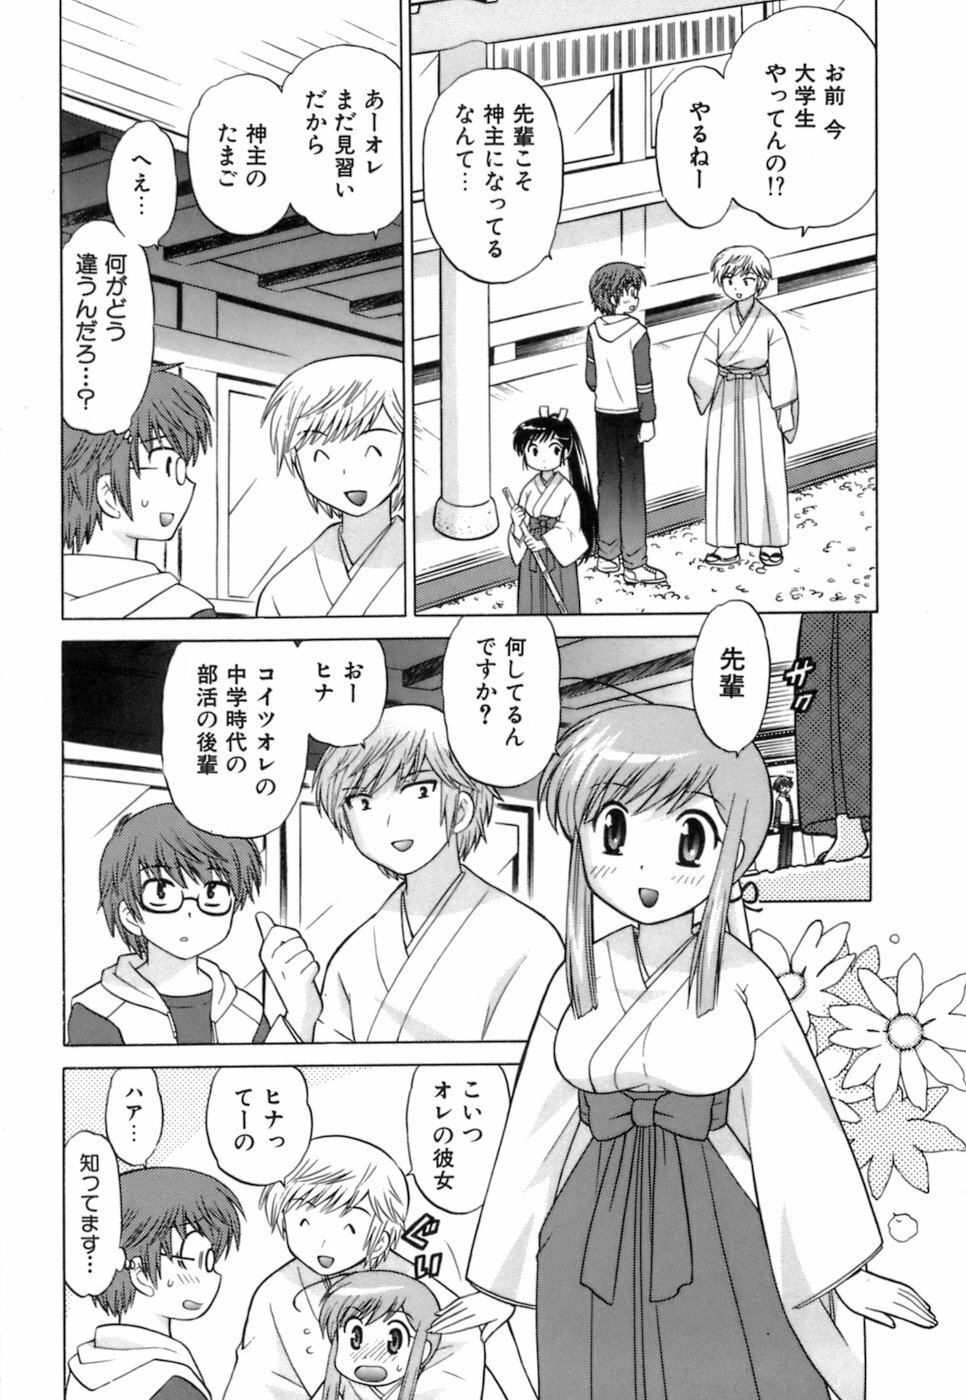 [Kotono Wakako] Miko Moe 1 page 35 full